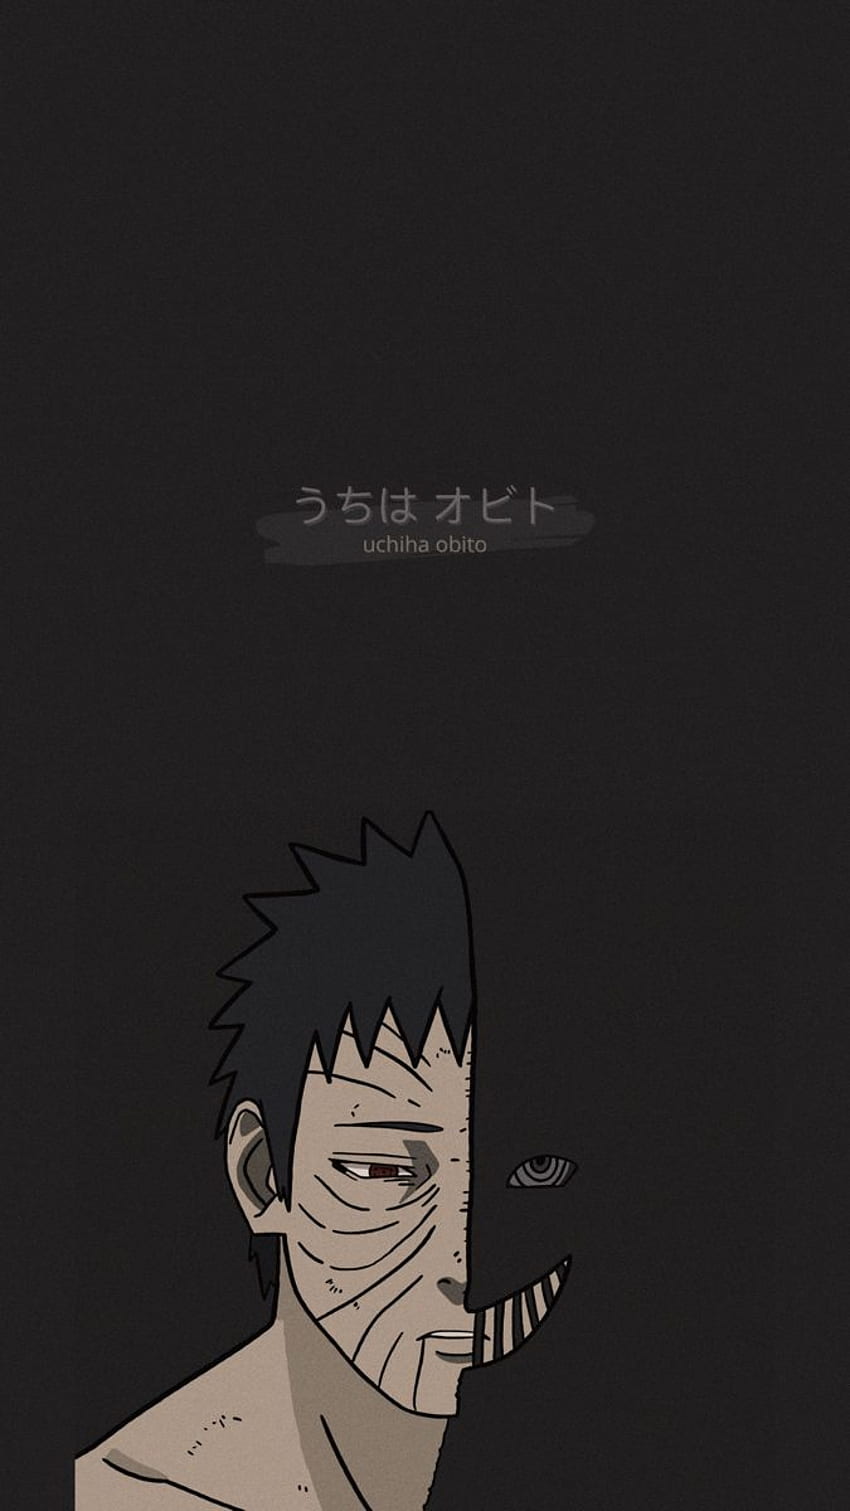 ¦ï¸obitoâ¦ï¸. Naruto painting, naruto shippuden, Naruto iphone, Obito Black HD phone wallpaper